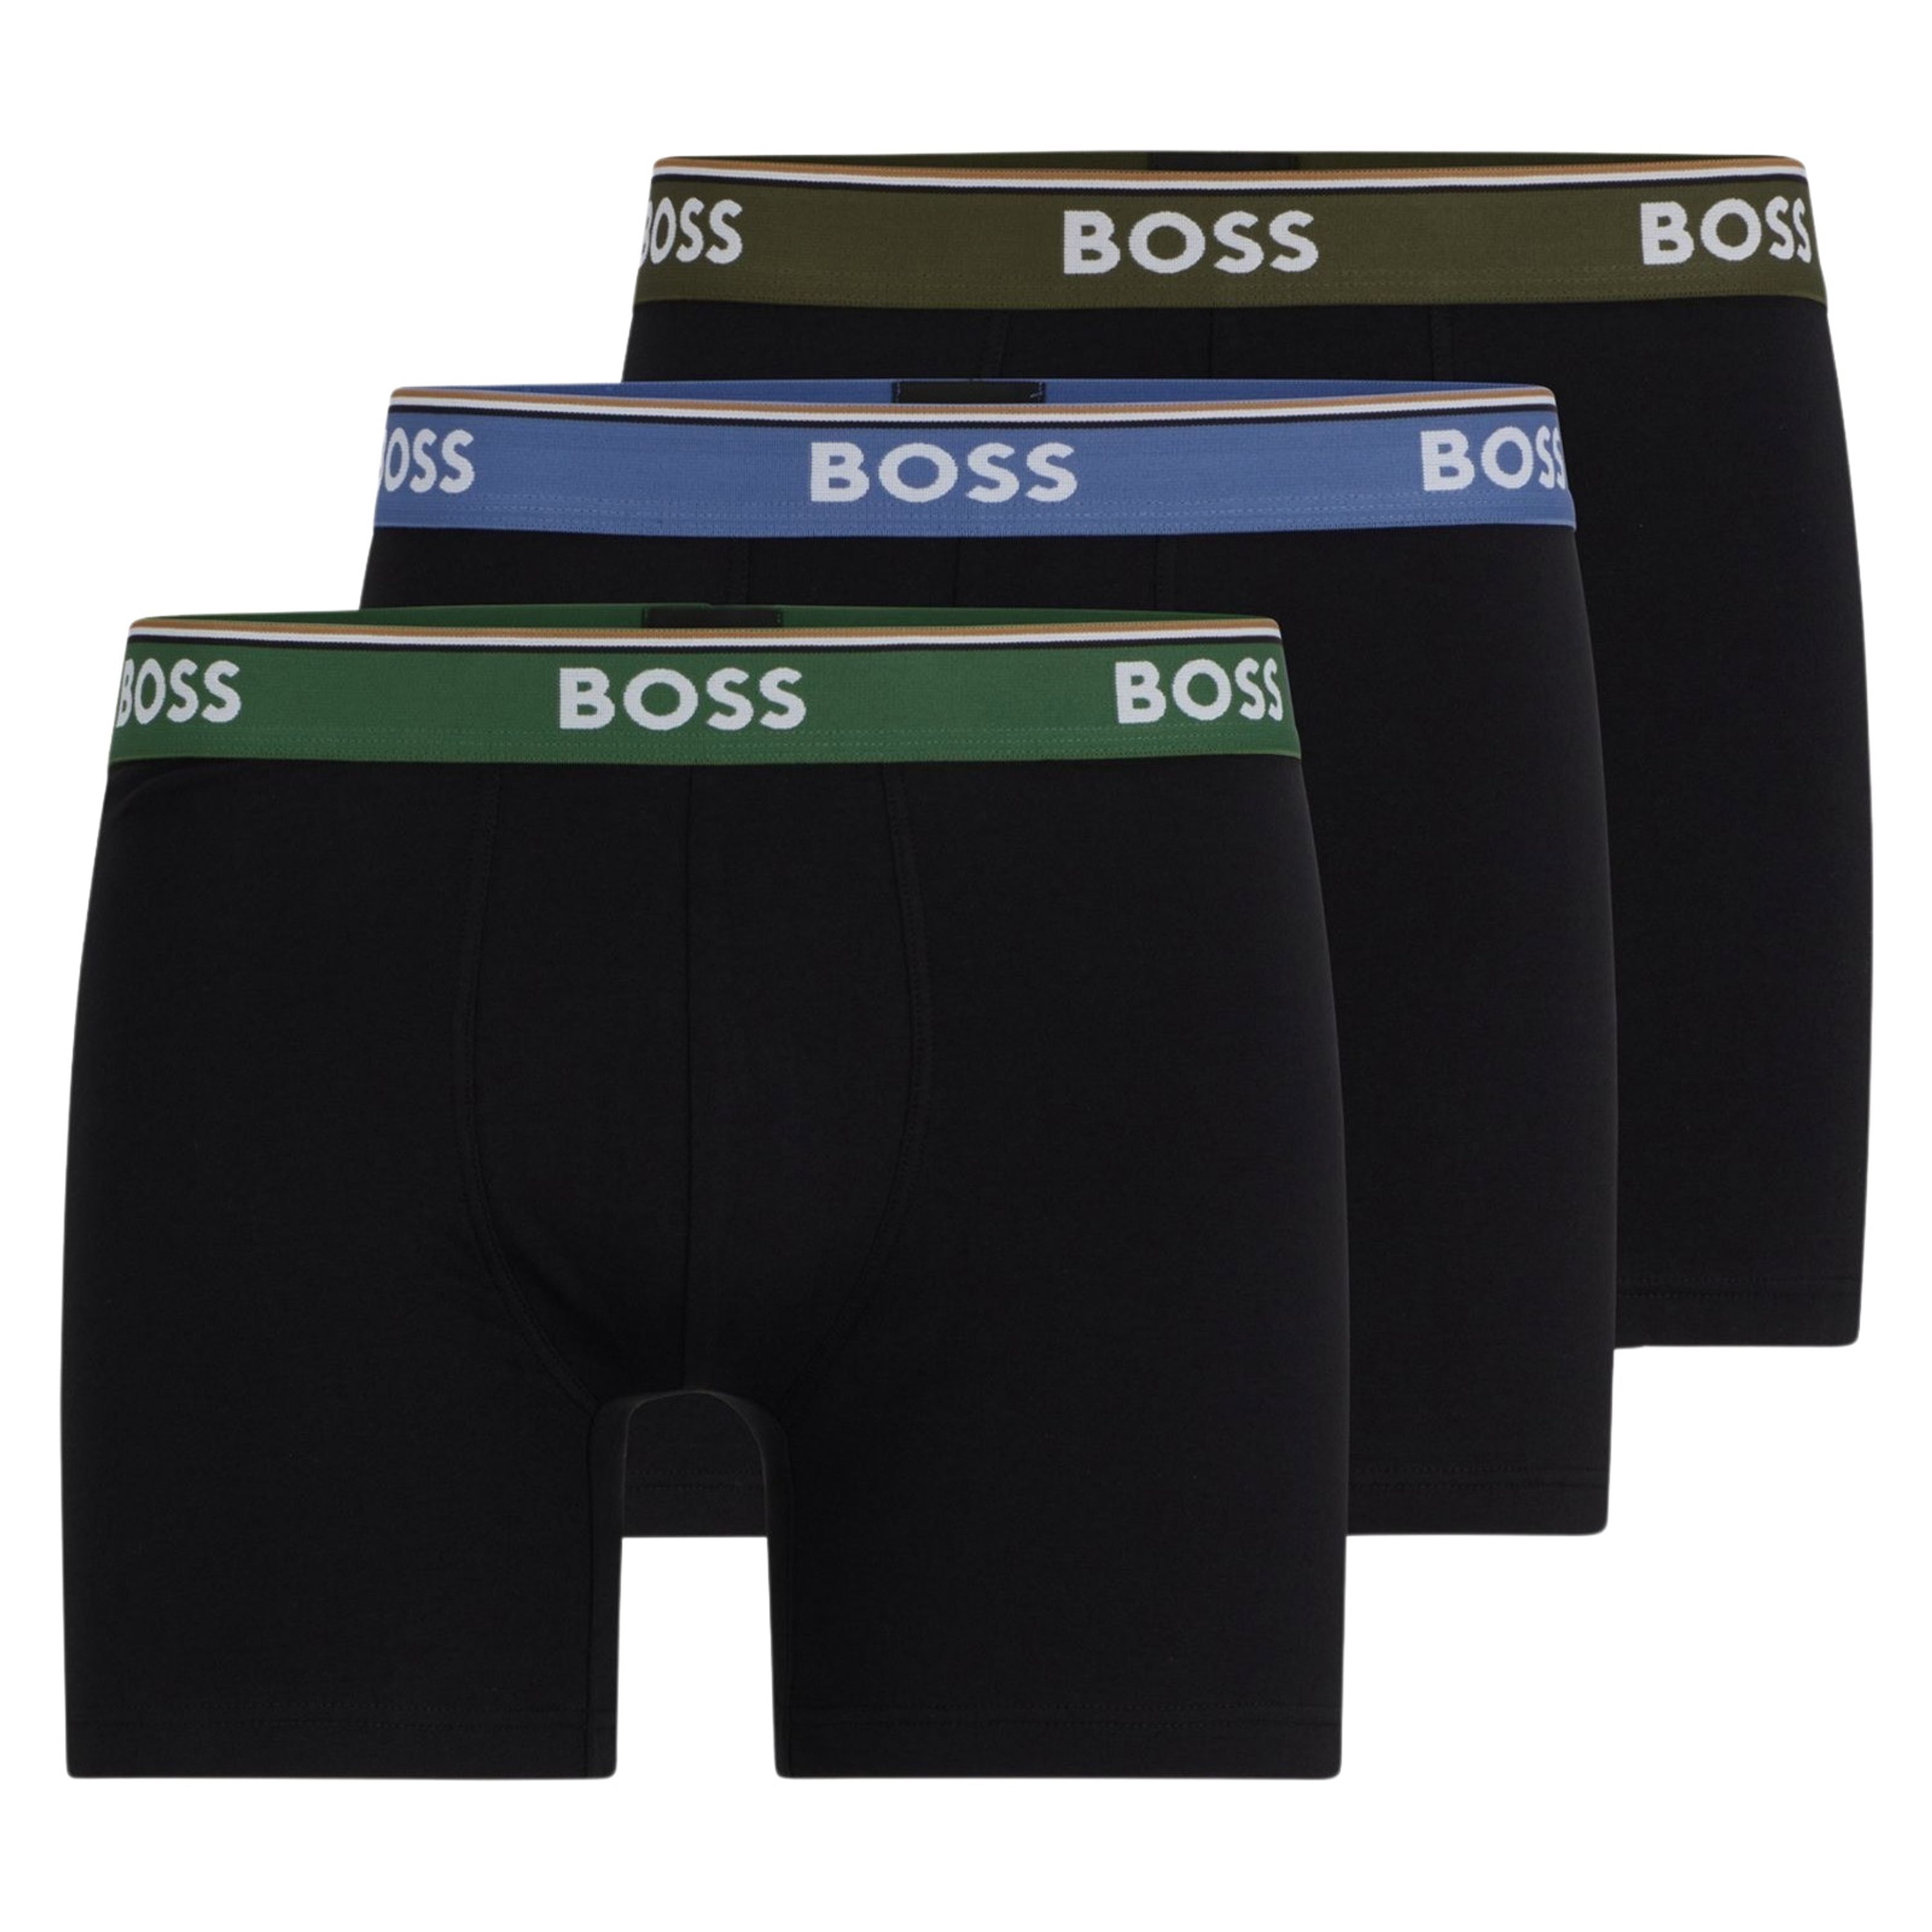 Boss Boxershort met elastische band met label in een set van 3 stuks